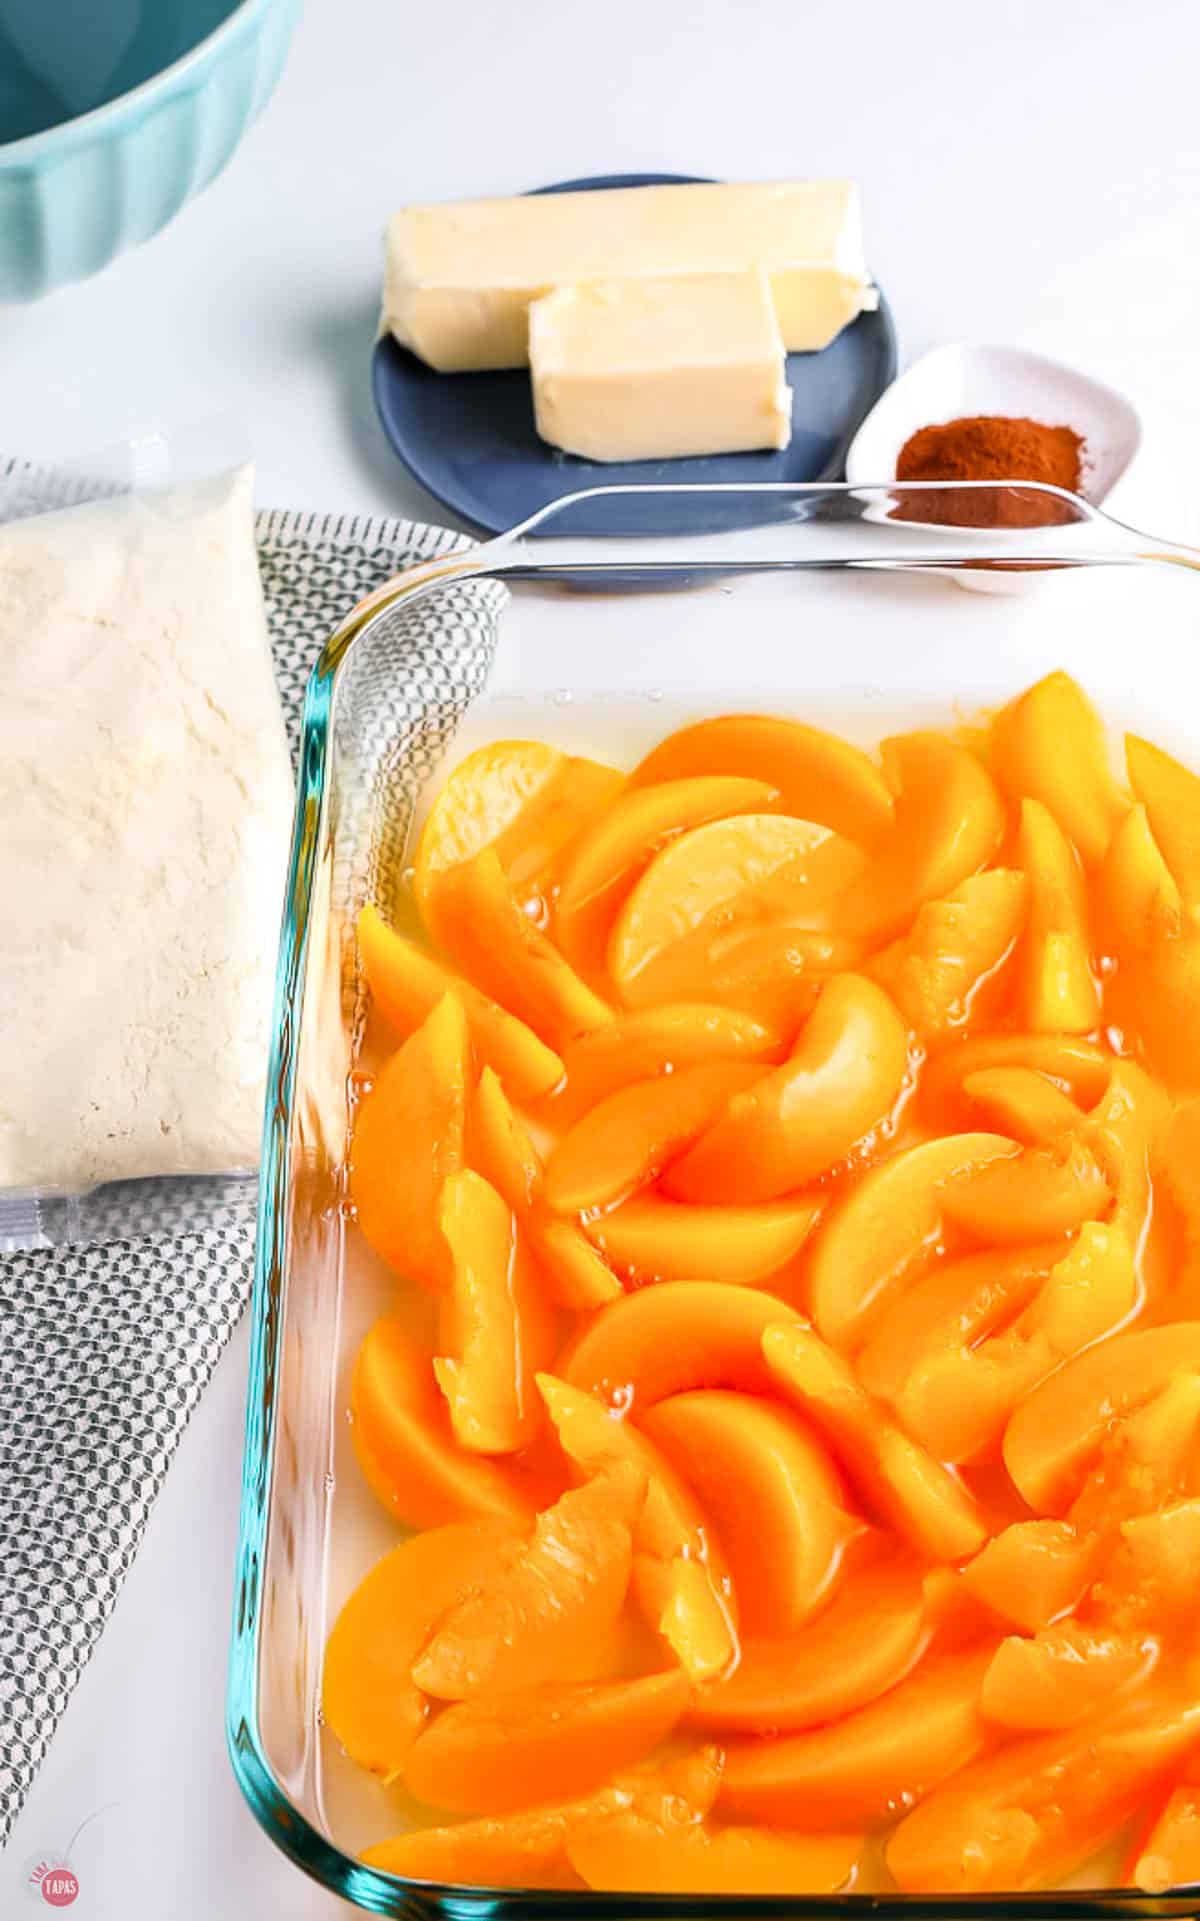 pour peaches in  casserole dish